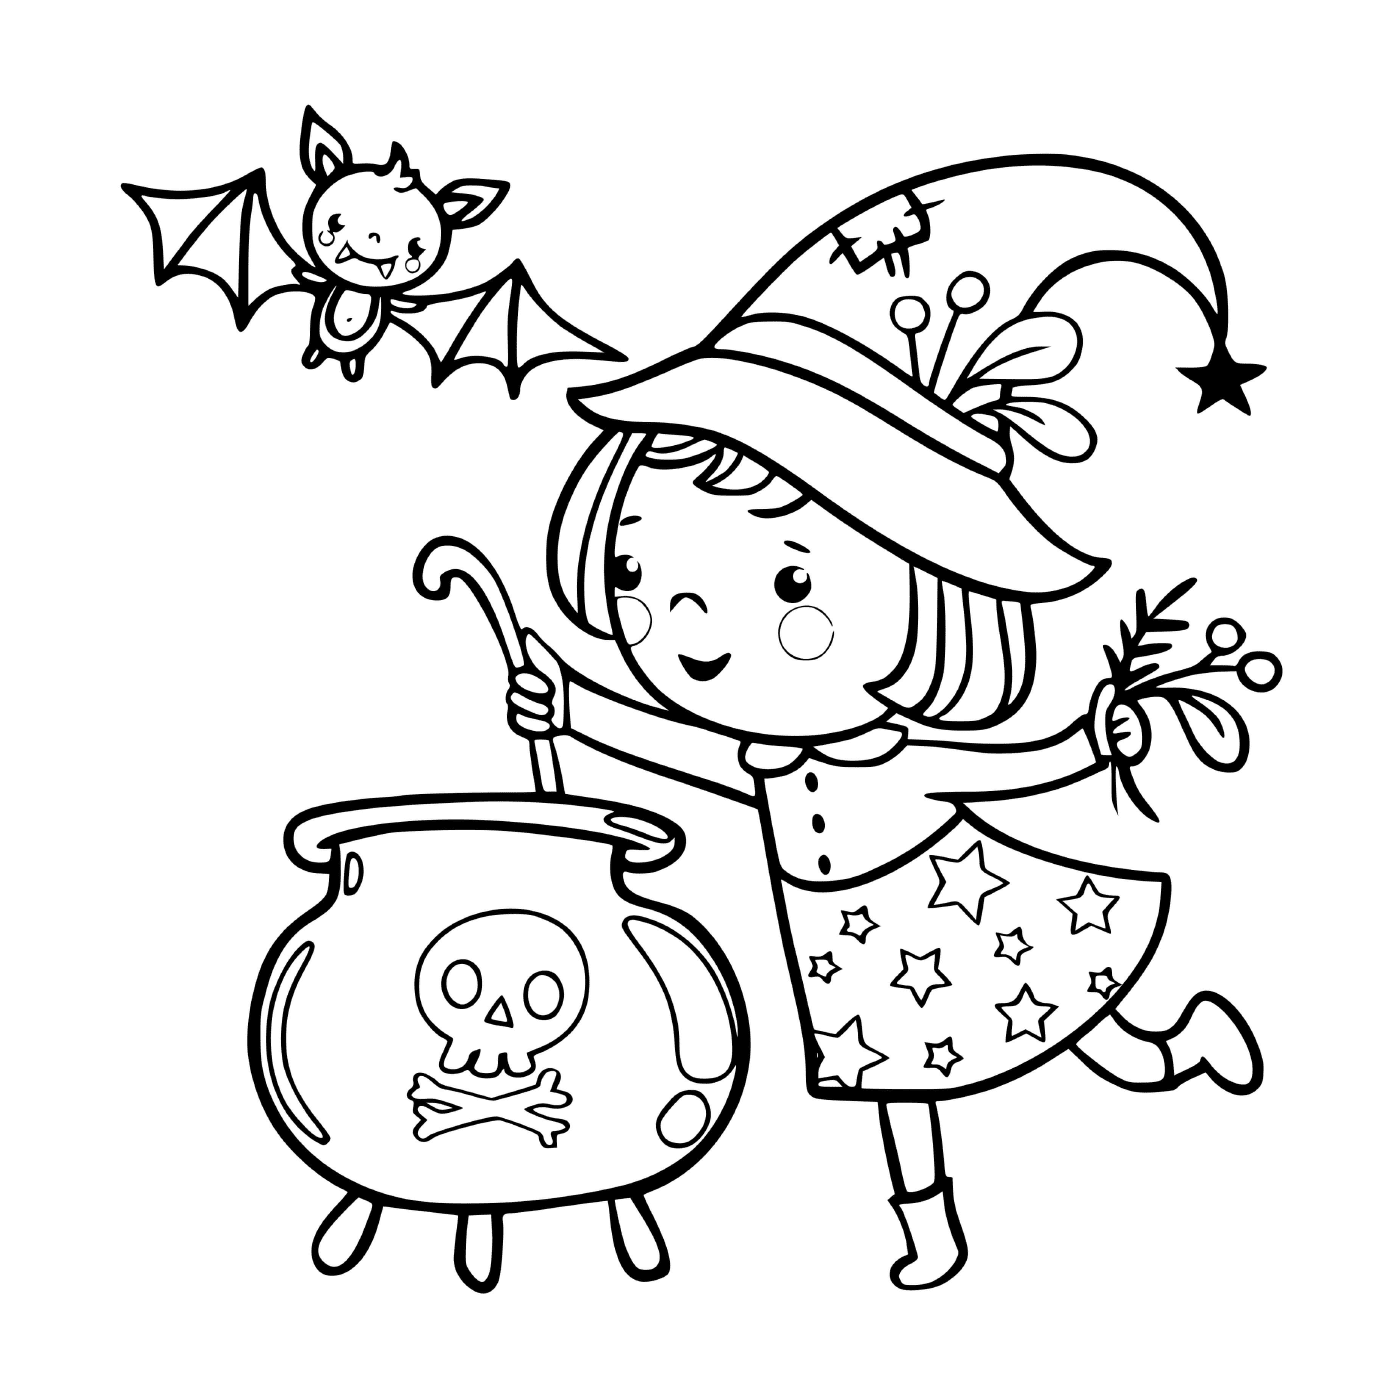  La pequeña bruja prepara una sopa mágica 